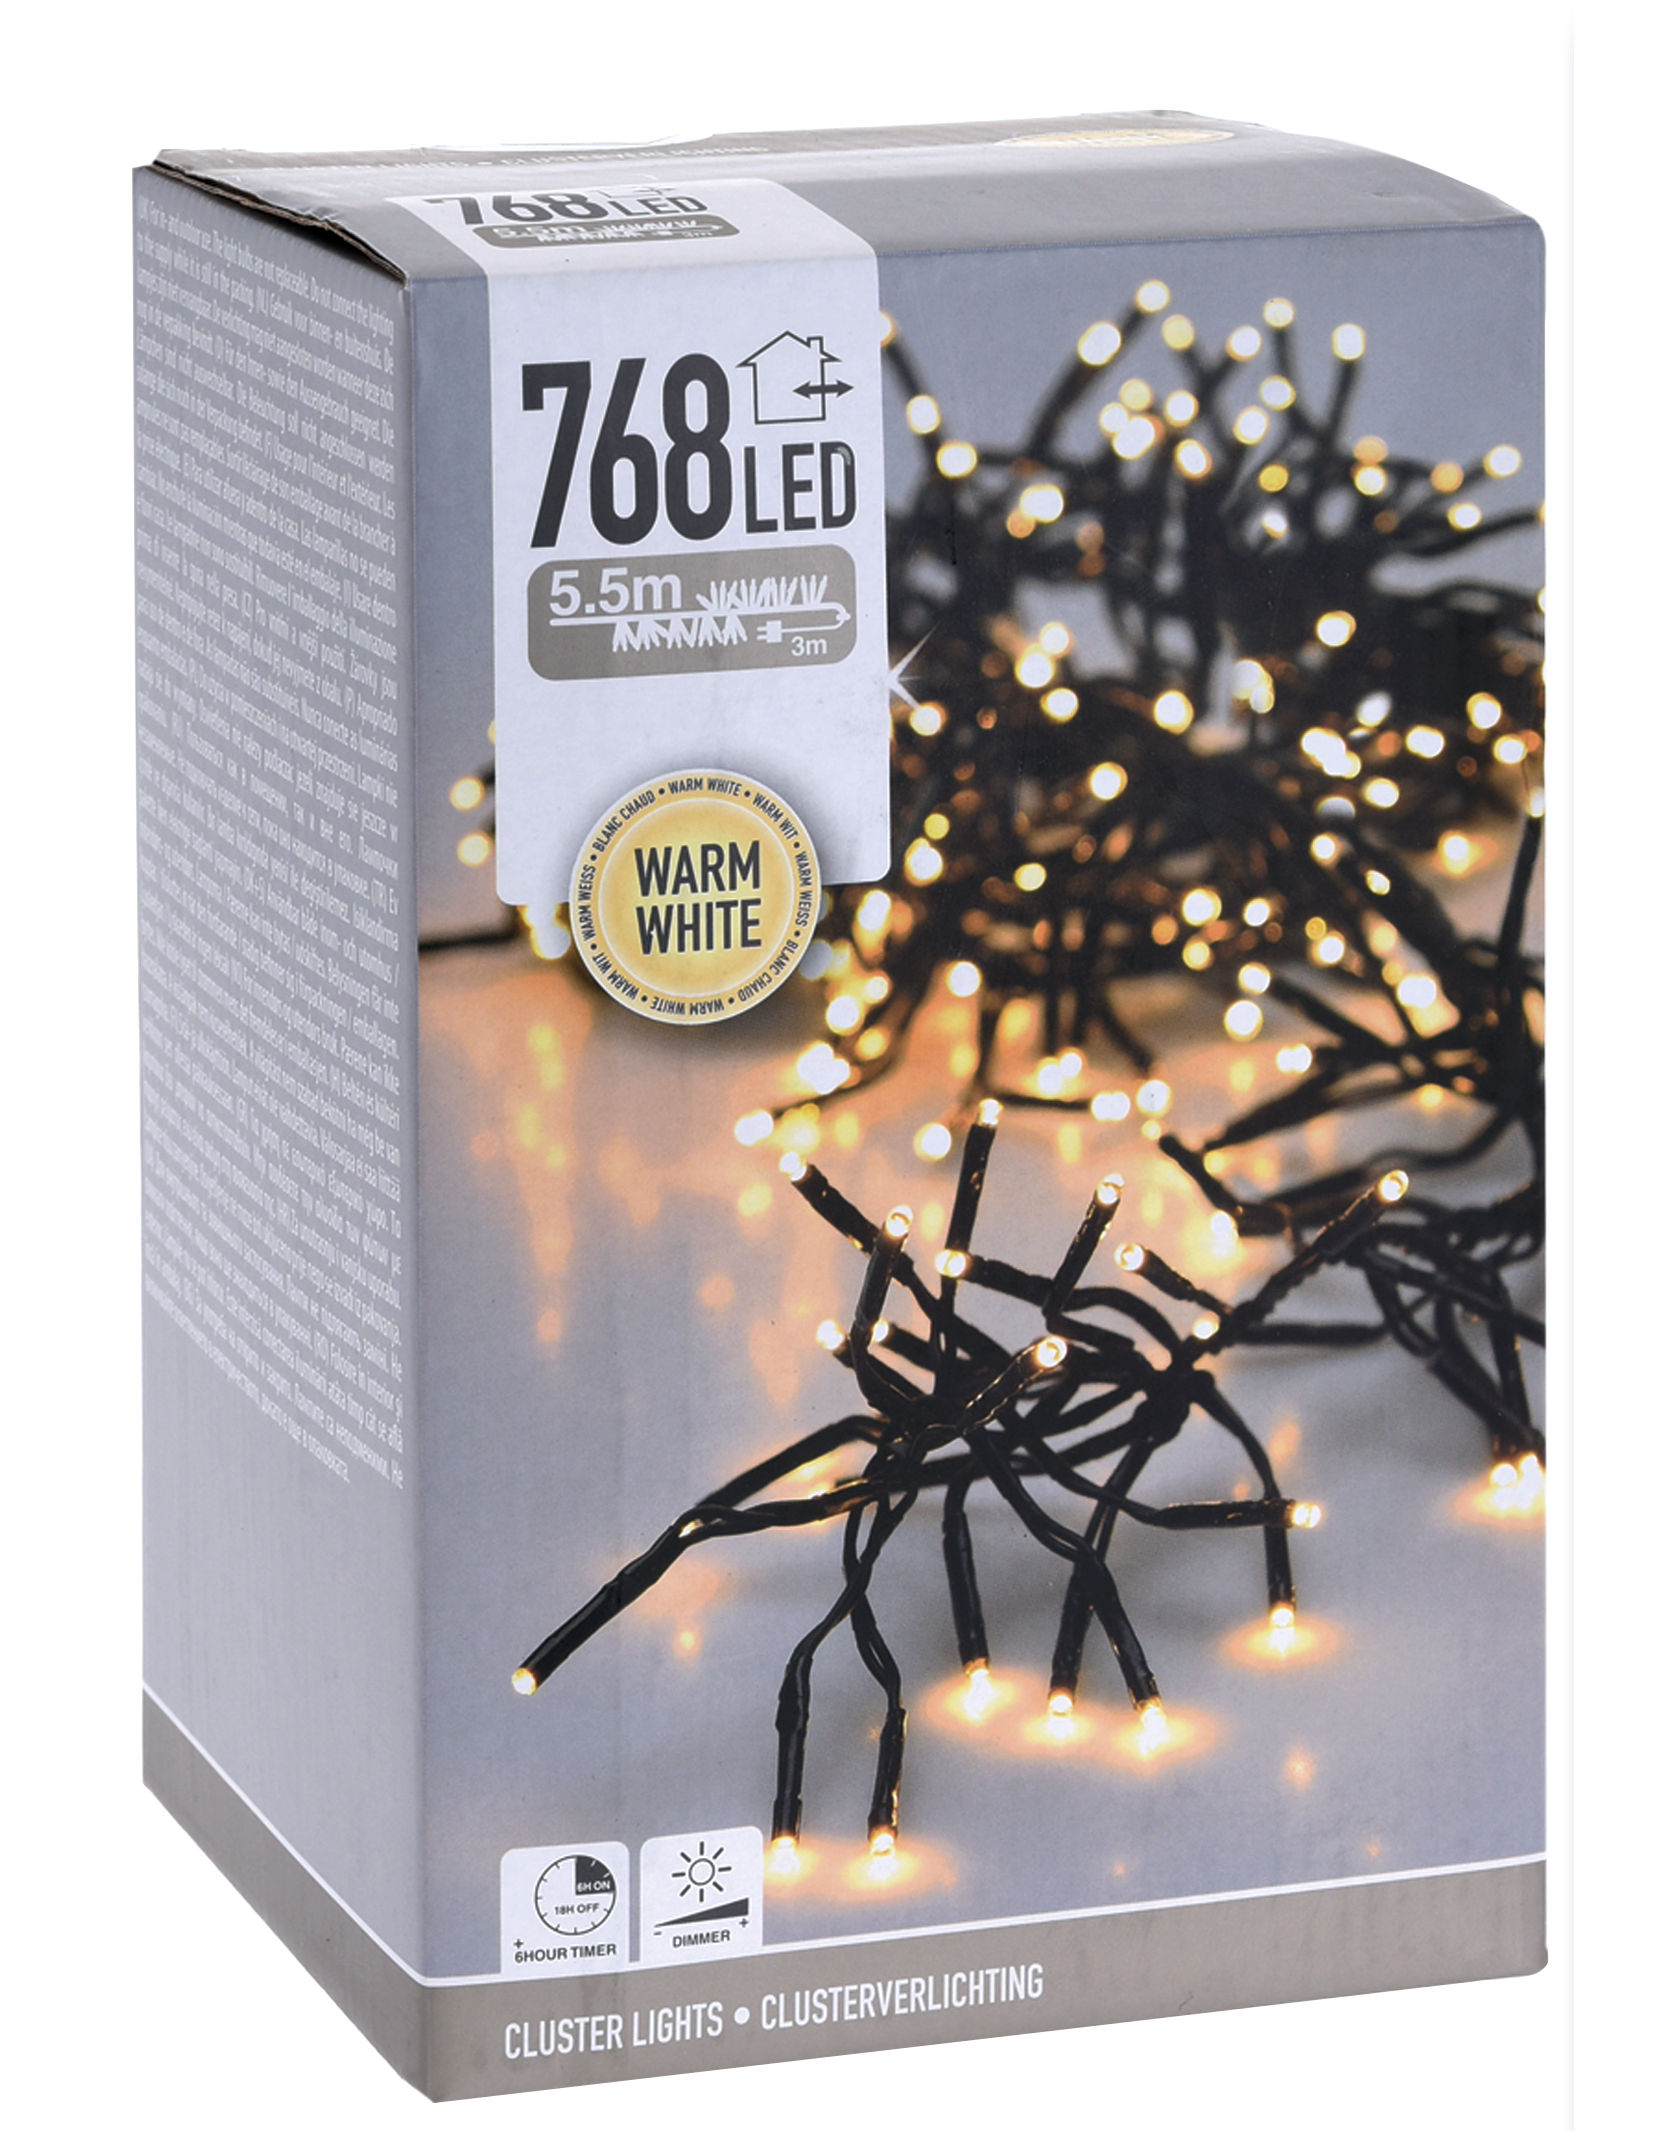 LED Büschel Lichterkette warm weiß mit Timer und Dimmer - 5,5 m / 768 LED - Garten Deko Beleuchtung für Außen